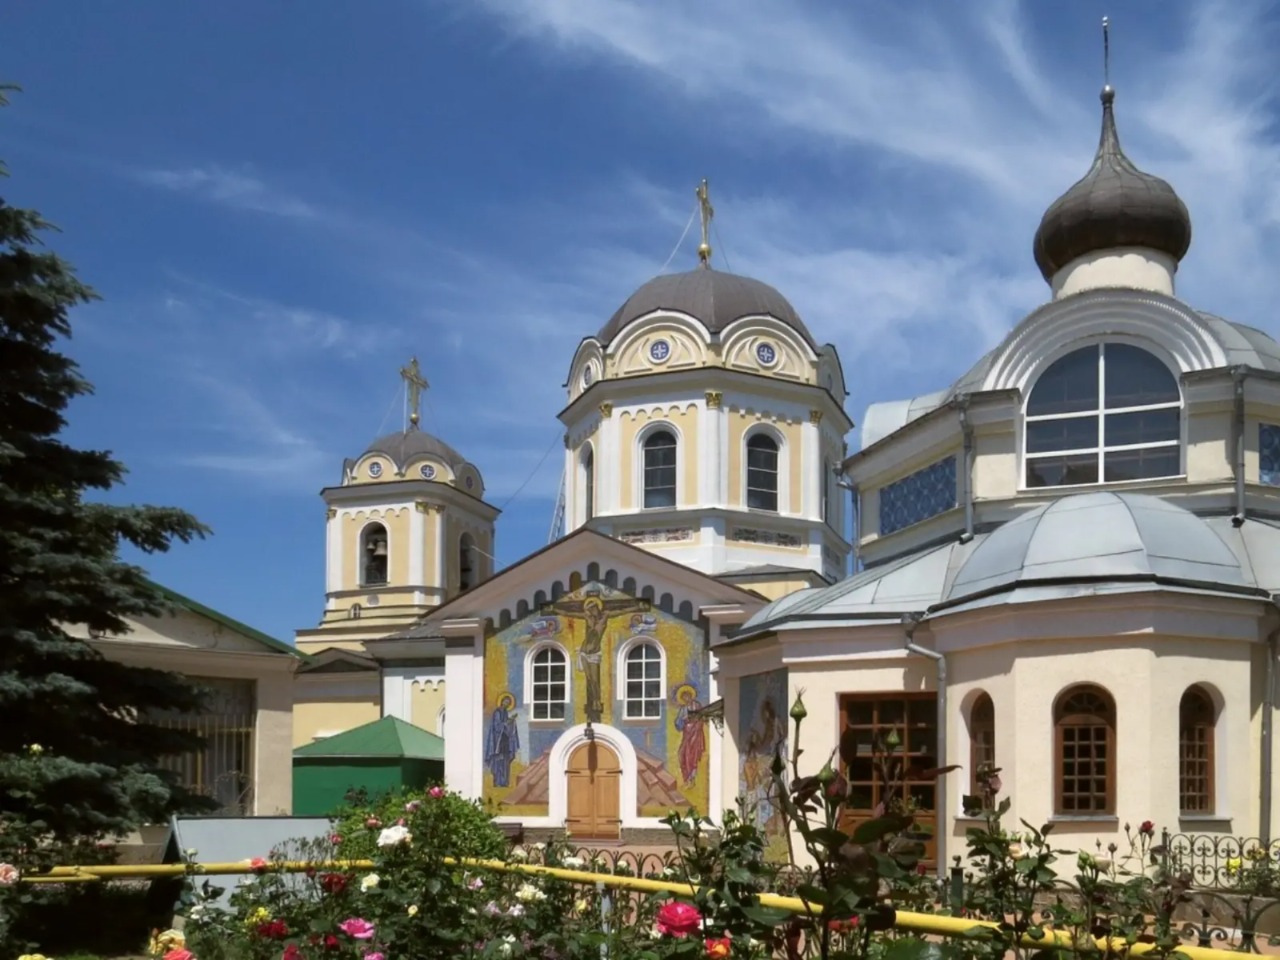 “Золотое кольцо Крыма”: по святым местам из Ялты | Цена 17300₽, отзывы, описание экскурсии